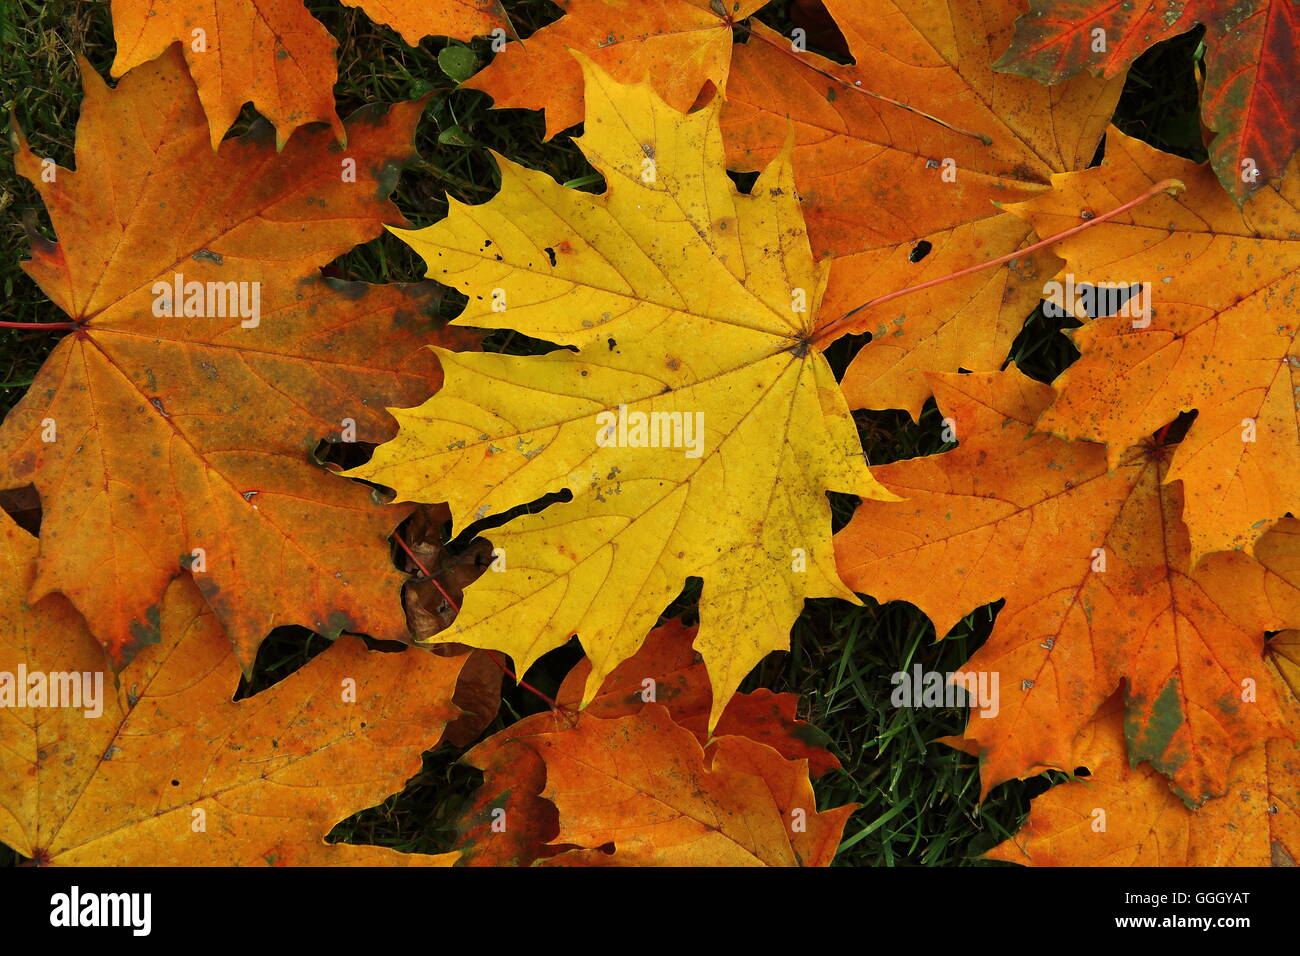 Les feuilles d'automne, feuilles colorées, érable de Norvège, / buntes herbstlaub des spitz-ahorn (Acer platanoides), feuilles d'automne, feuillage d'automne Banque D'Images